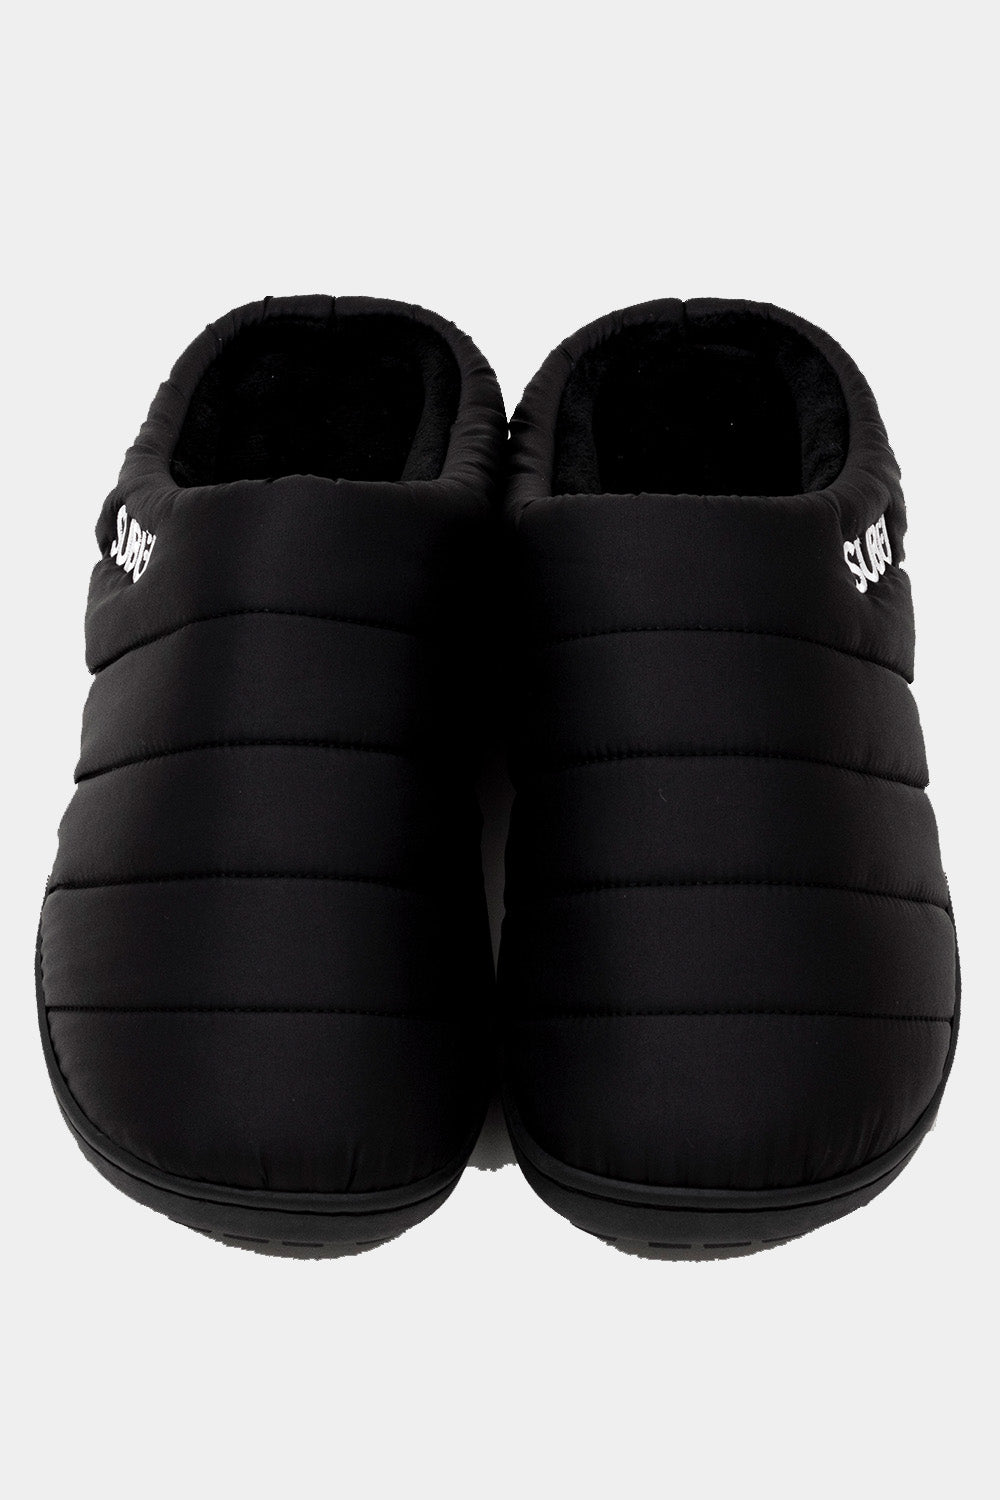 SUBU Indoor Outdoor Slippers (Black)